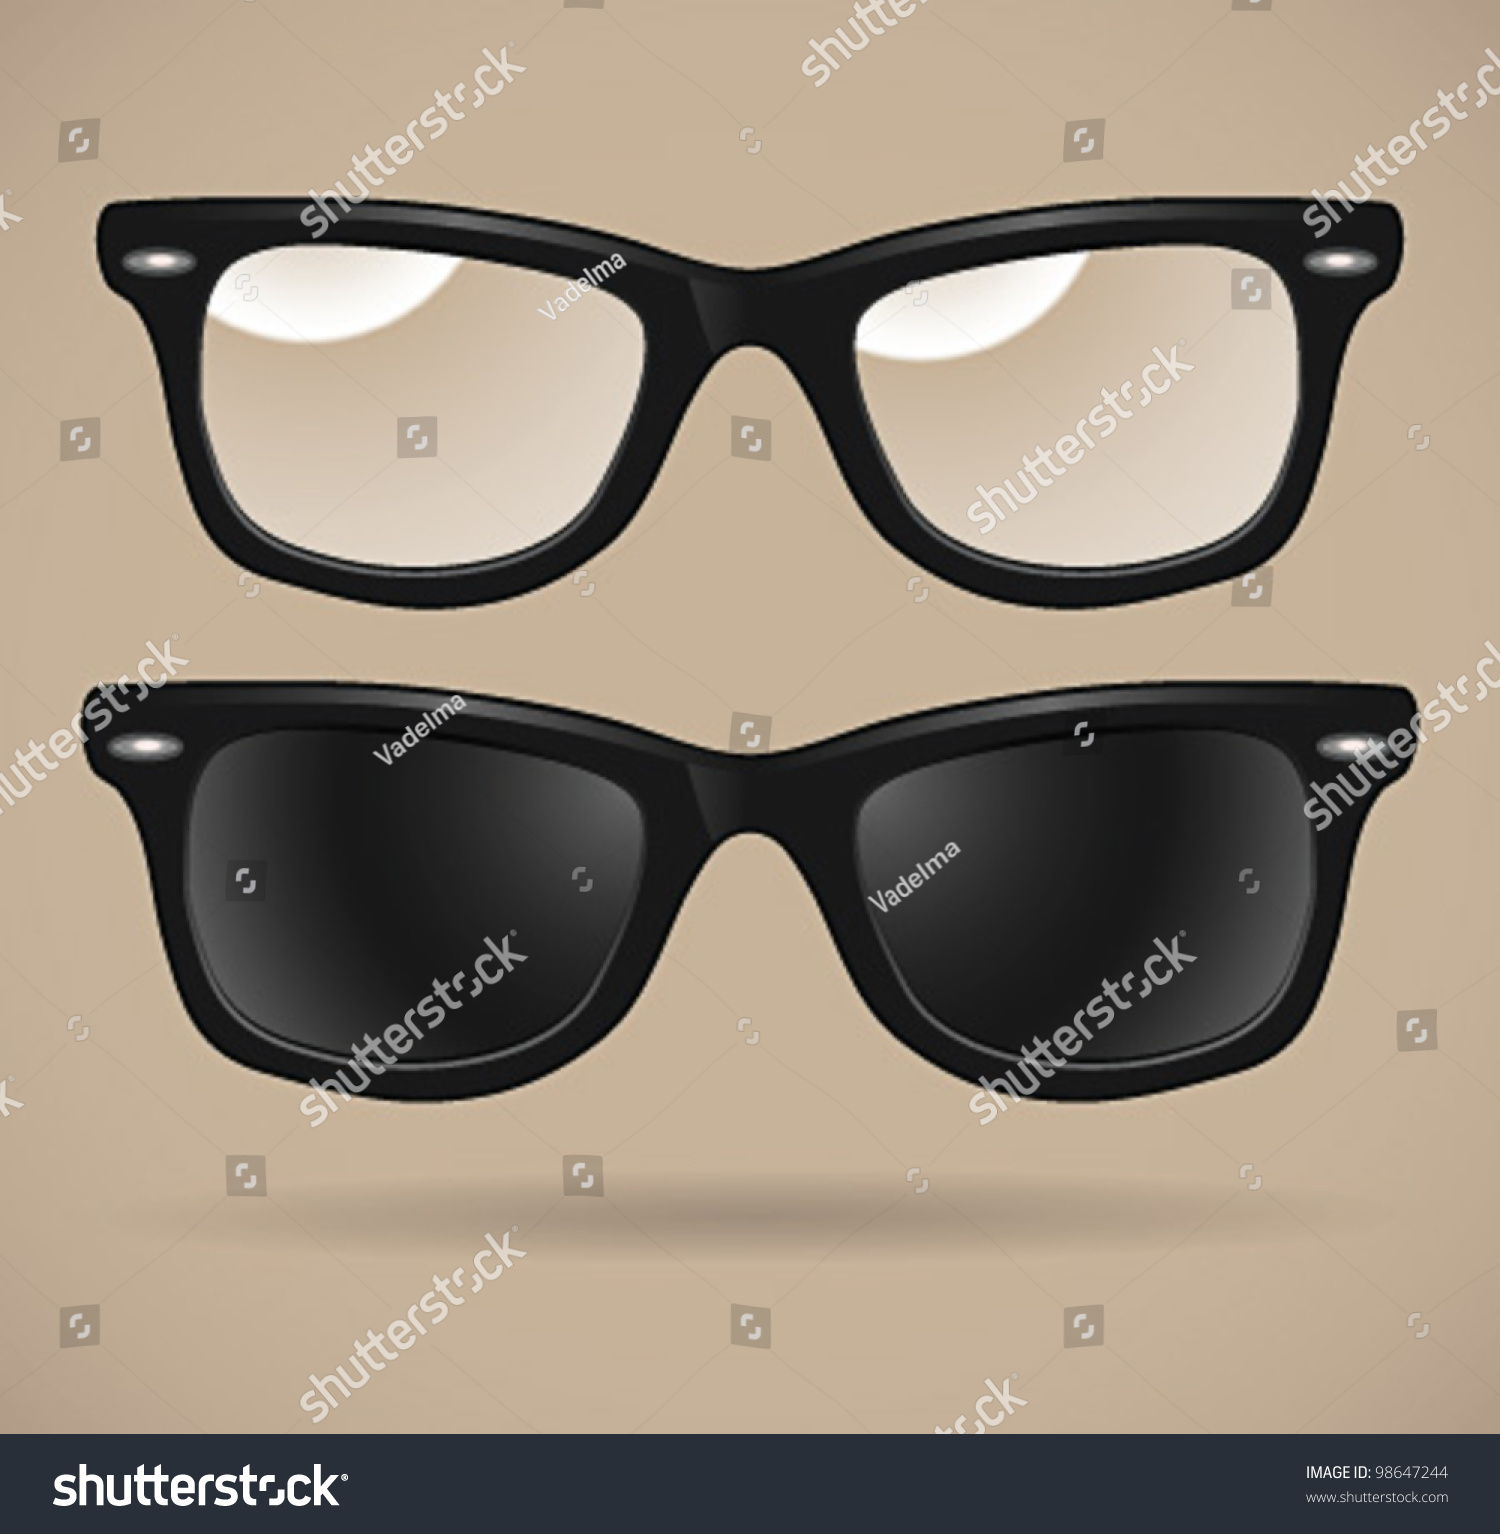 wayfarer shape eyeglasses